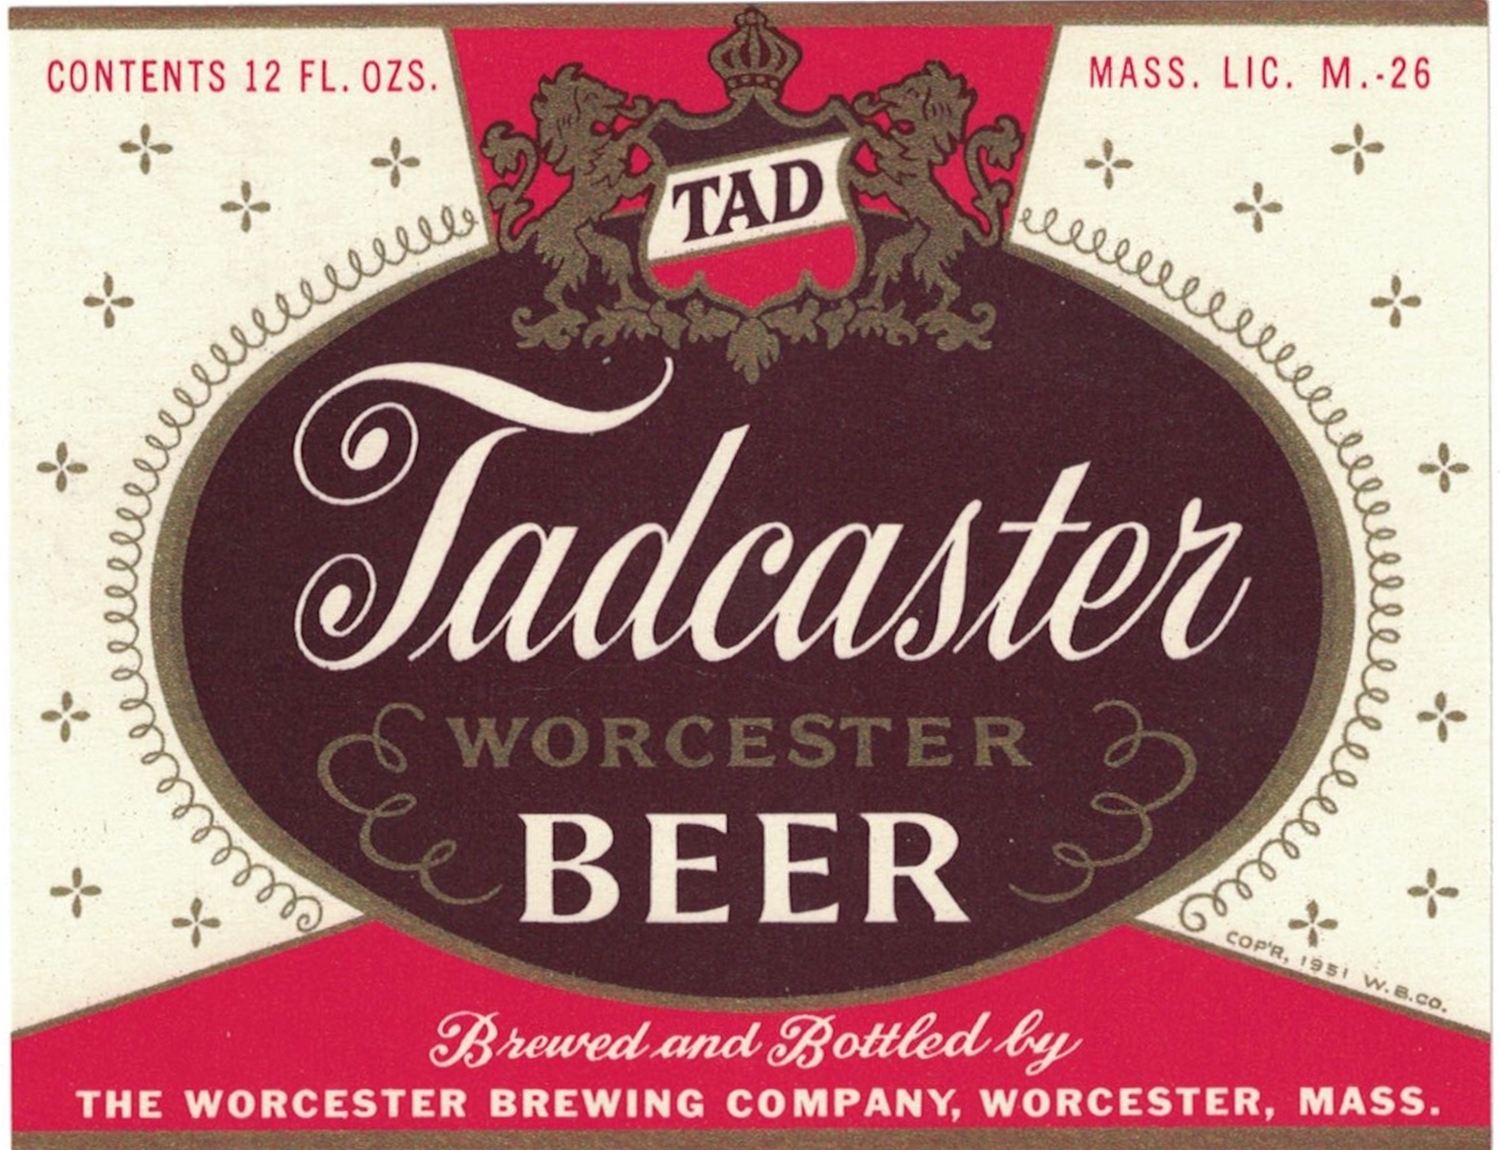 Tadcaster Worcester Beer Label